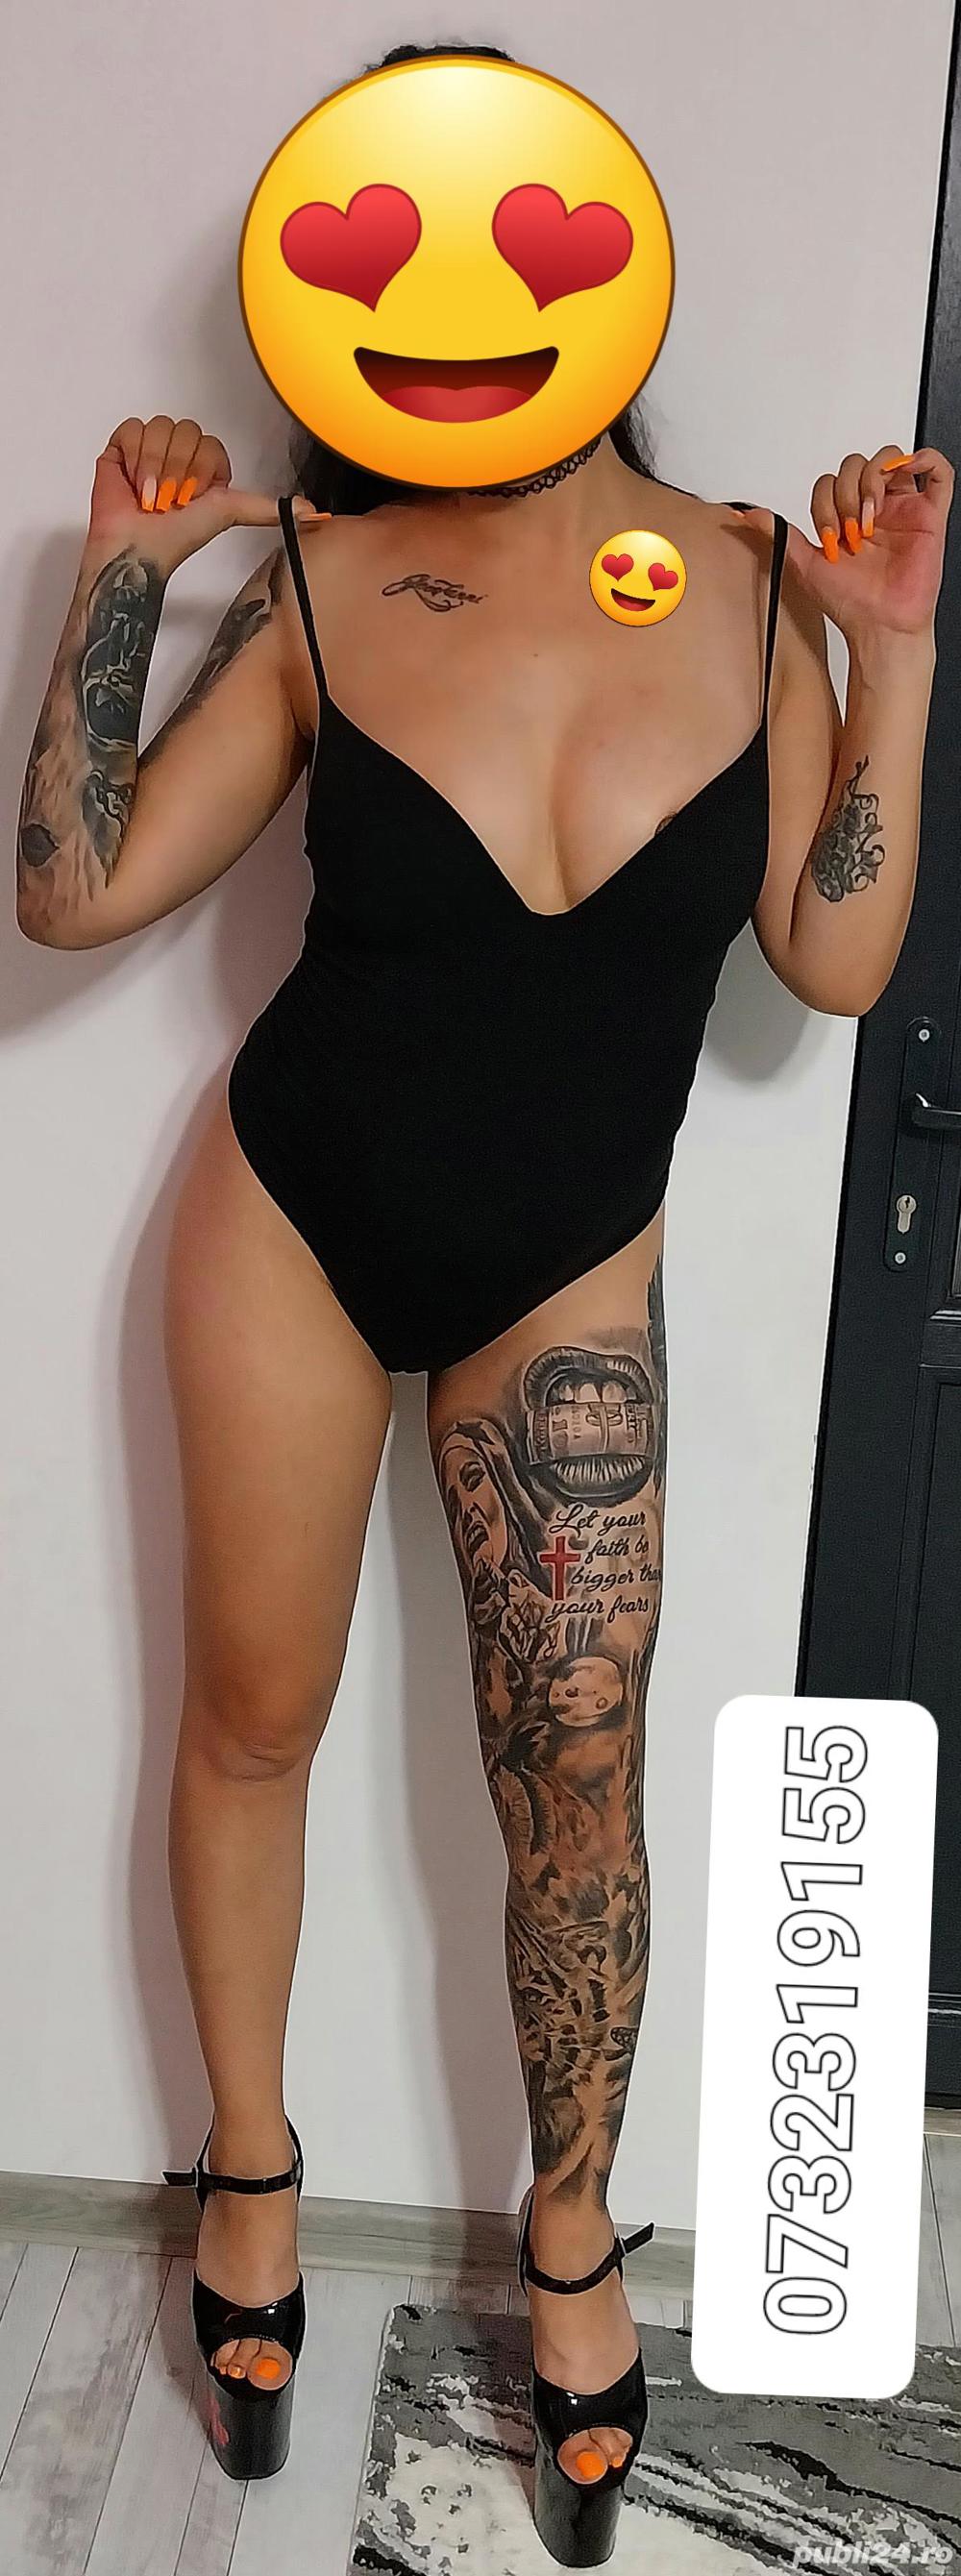 Rebeca confirm tatto  - imagine 4